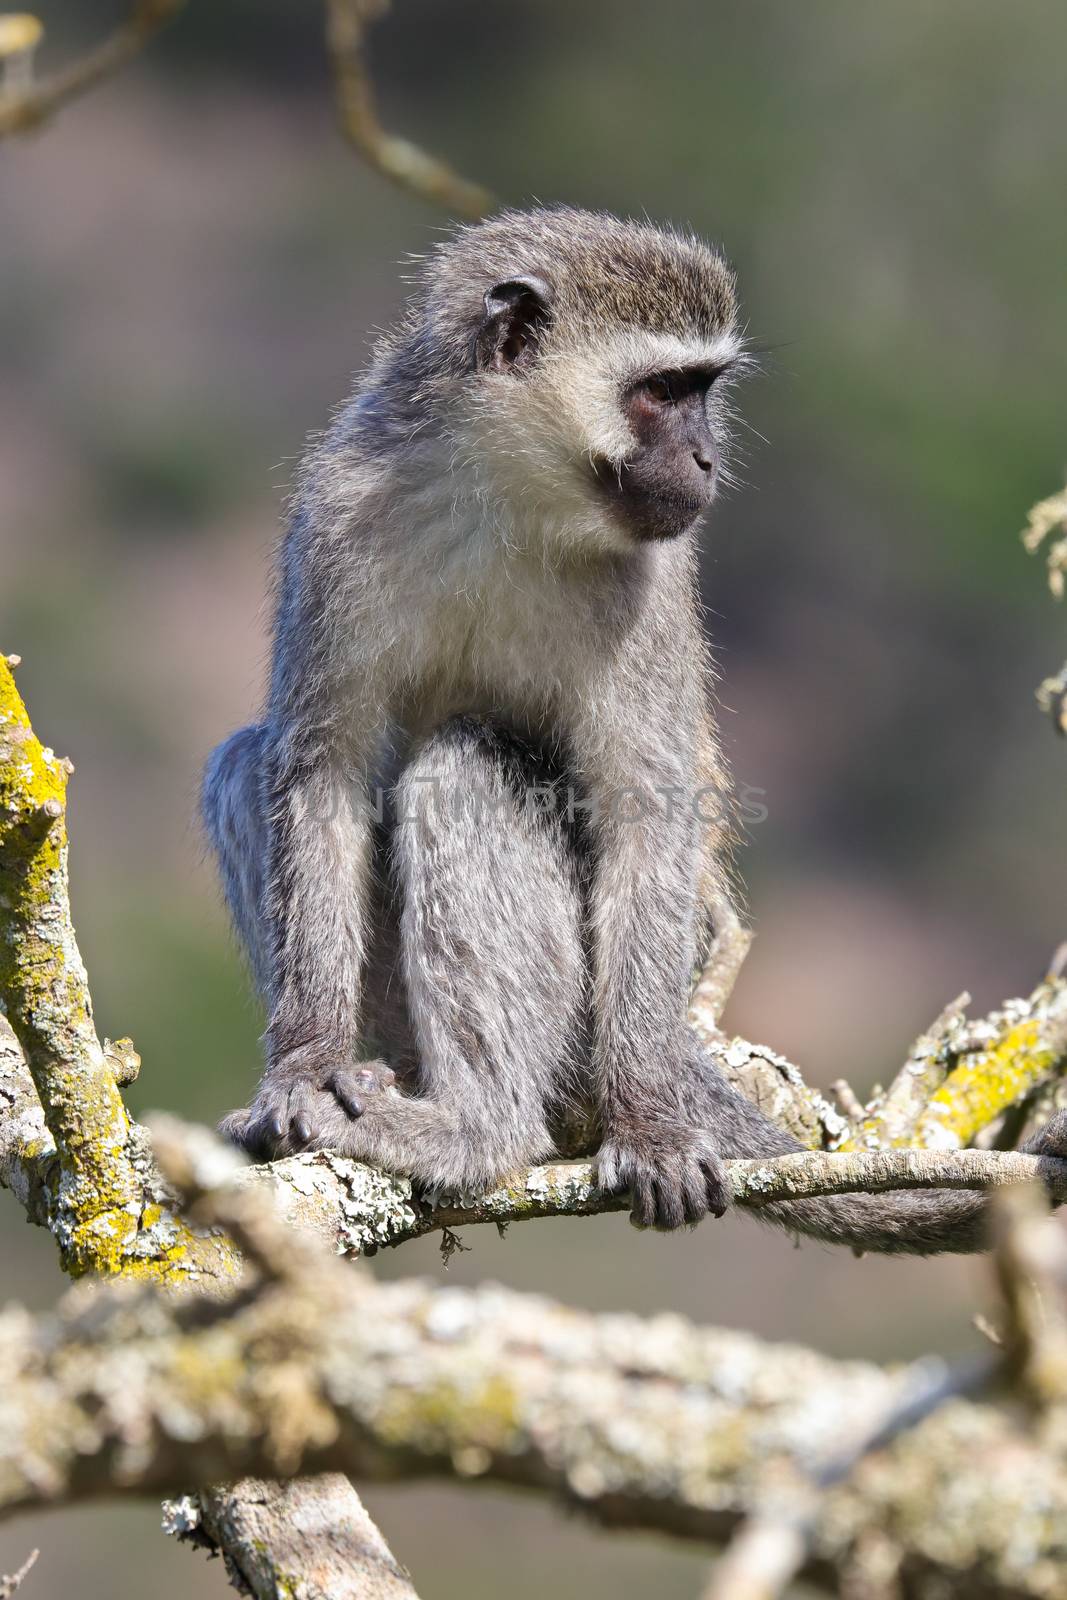 Vervet Monkey Sitting On Branch Looking Away (Chlorocebus pygerythrus) by jjvanginkel